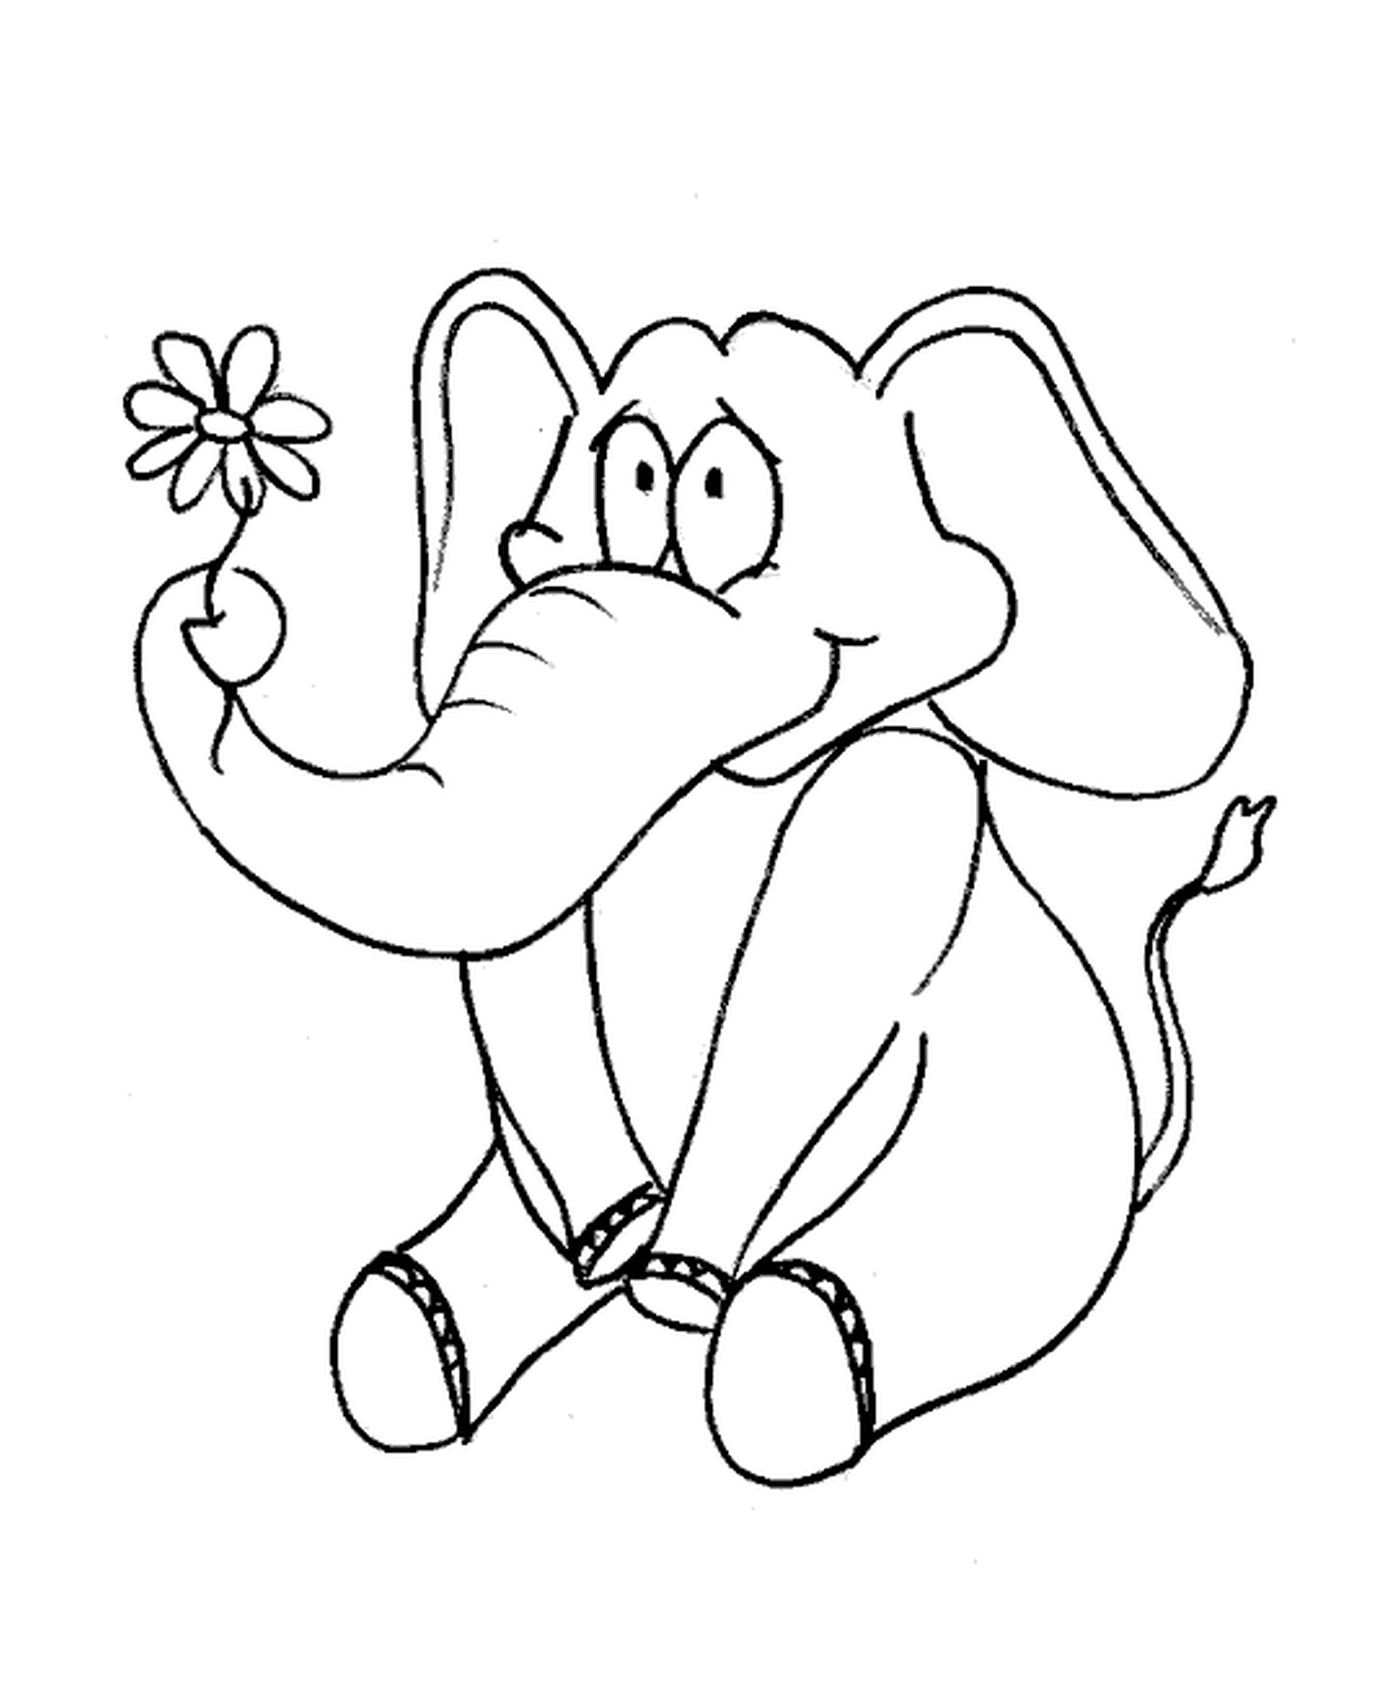  大象拿着花朵 